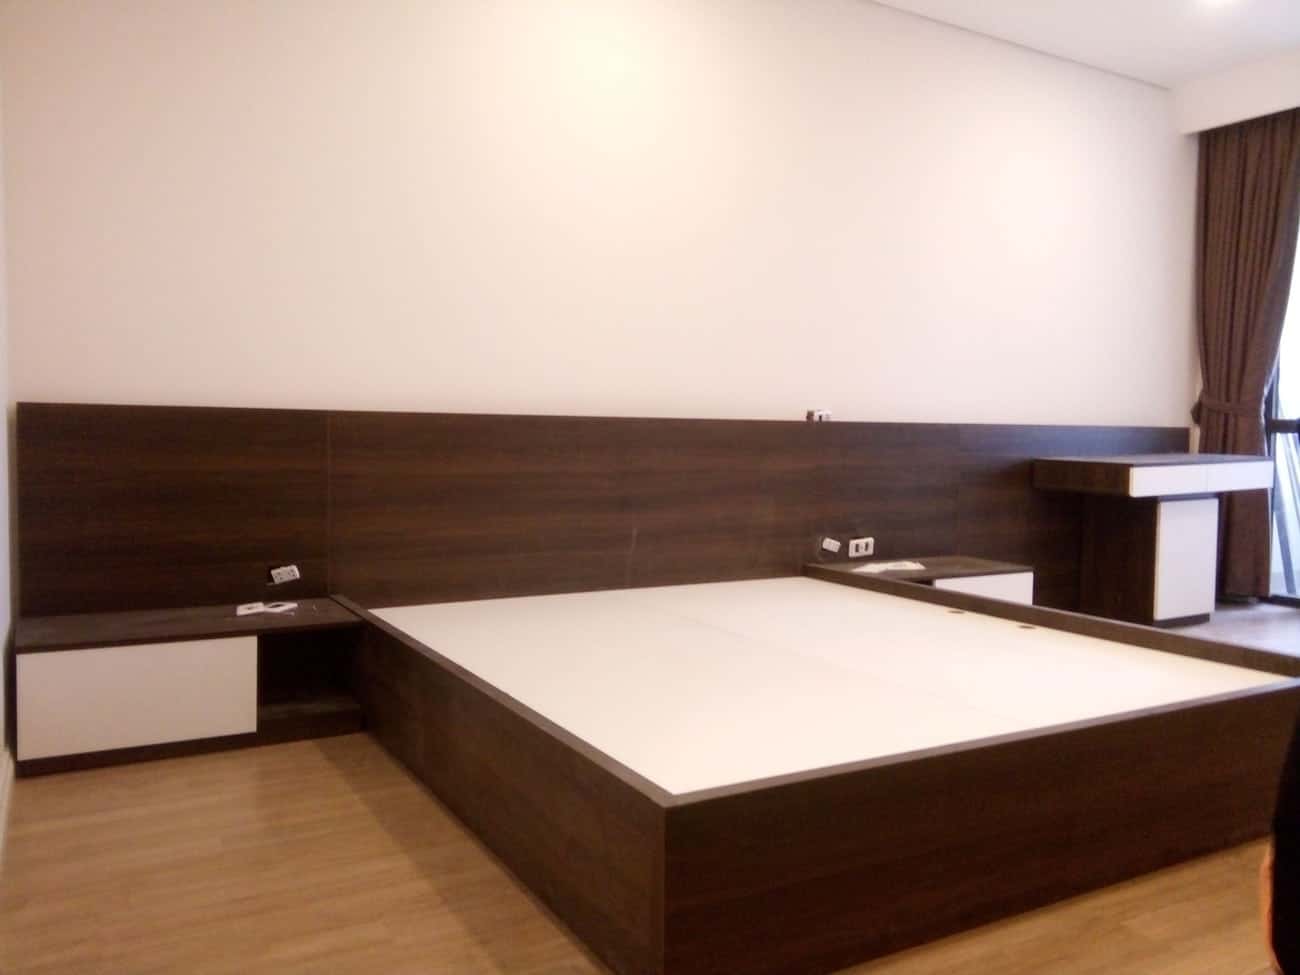 Giường ngủ gỗ MFC An Cường – Sản phẩm hiện đại chuẩn nội thất